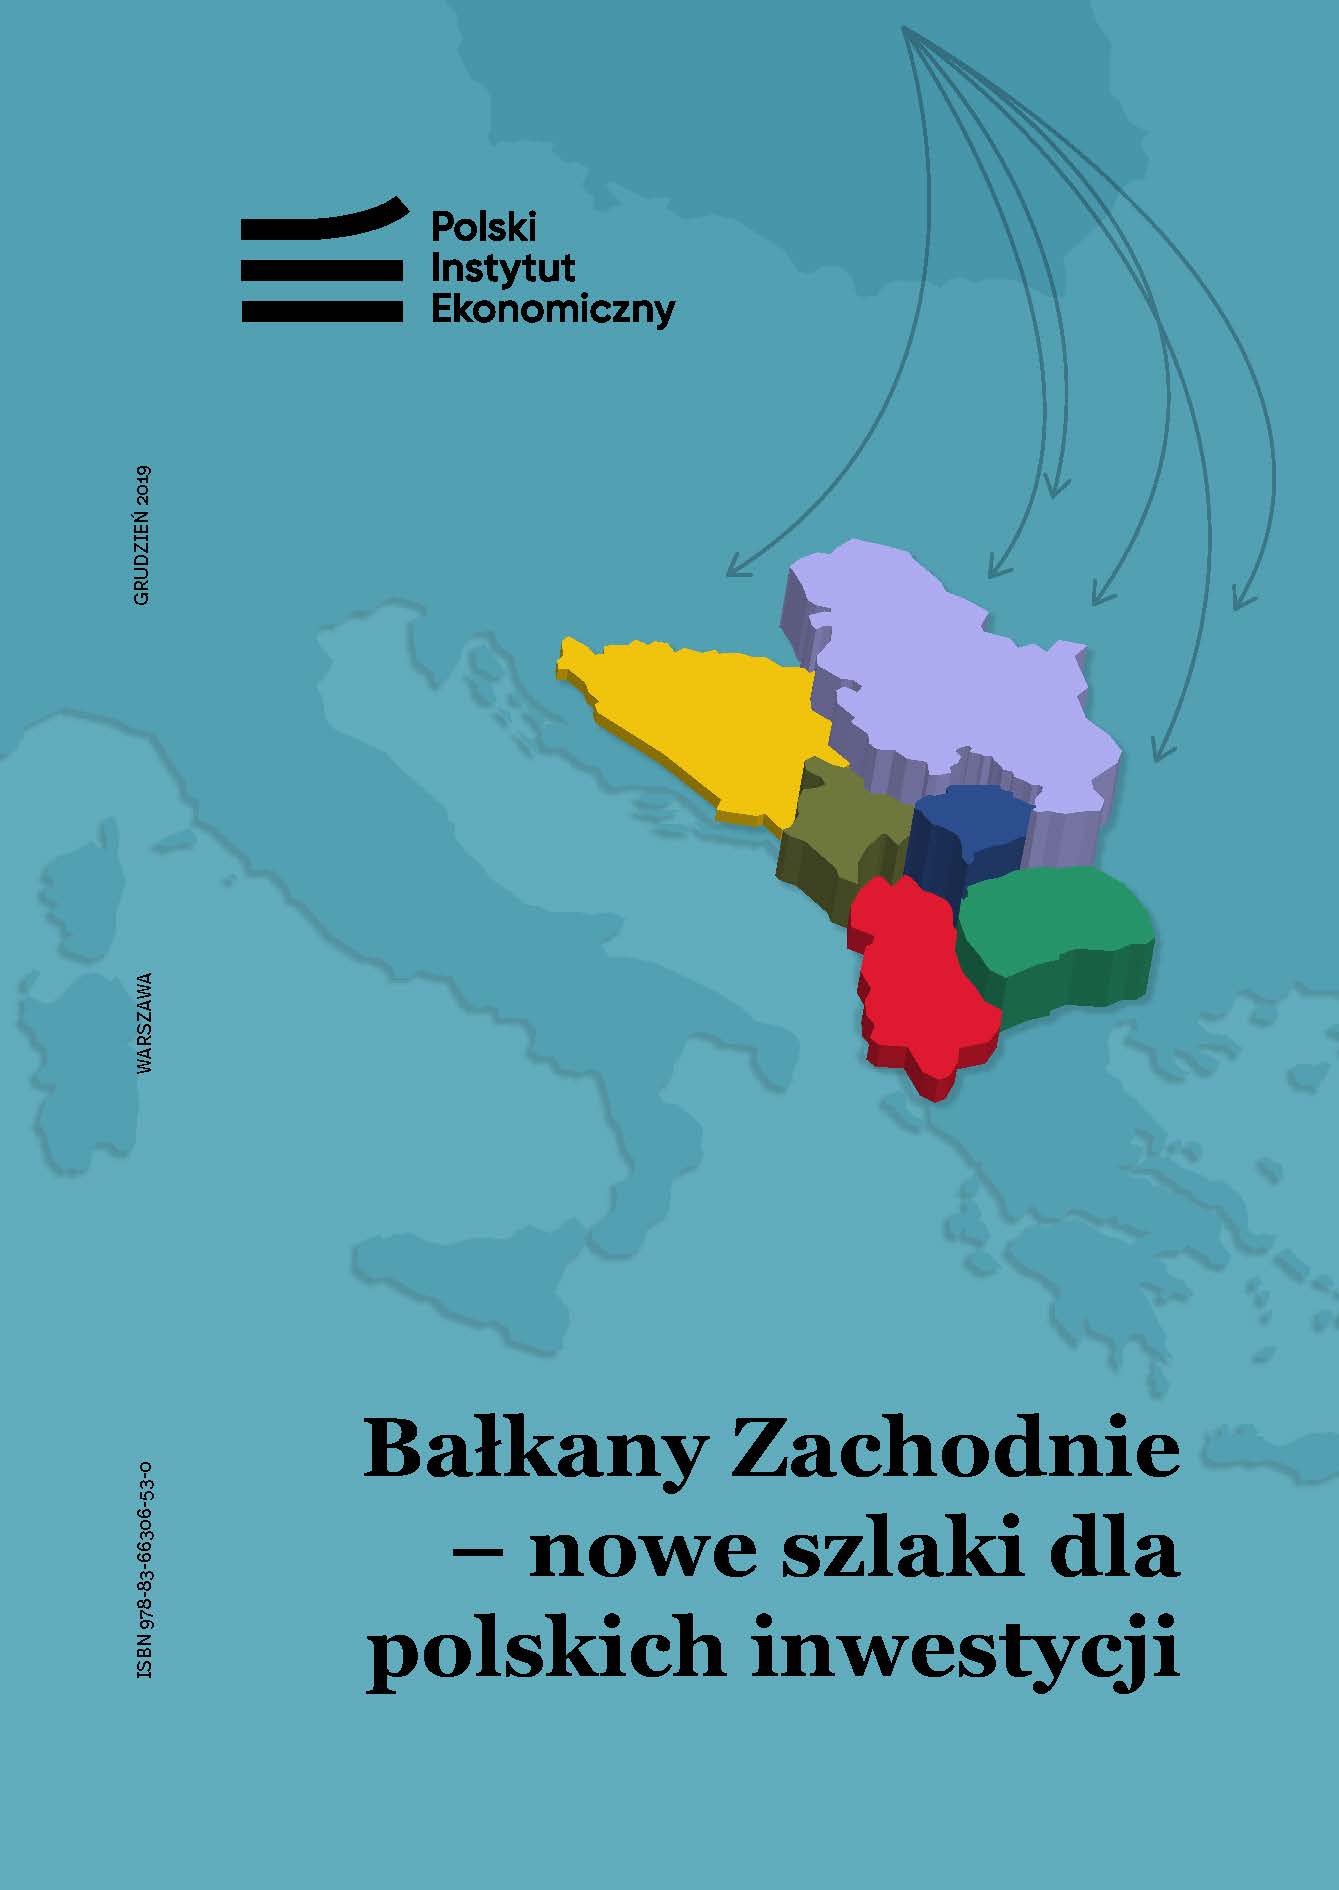 Polscy eksporterzy i inwestorzy powinni zwiększyć swoją aktywność na Bałkanach Zachodnich